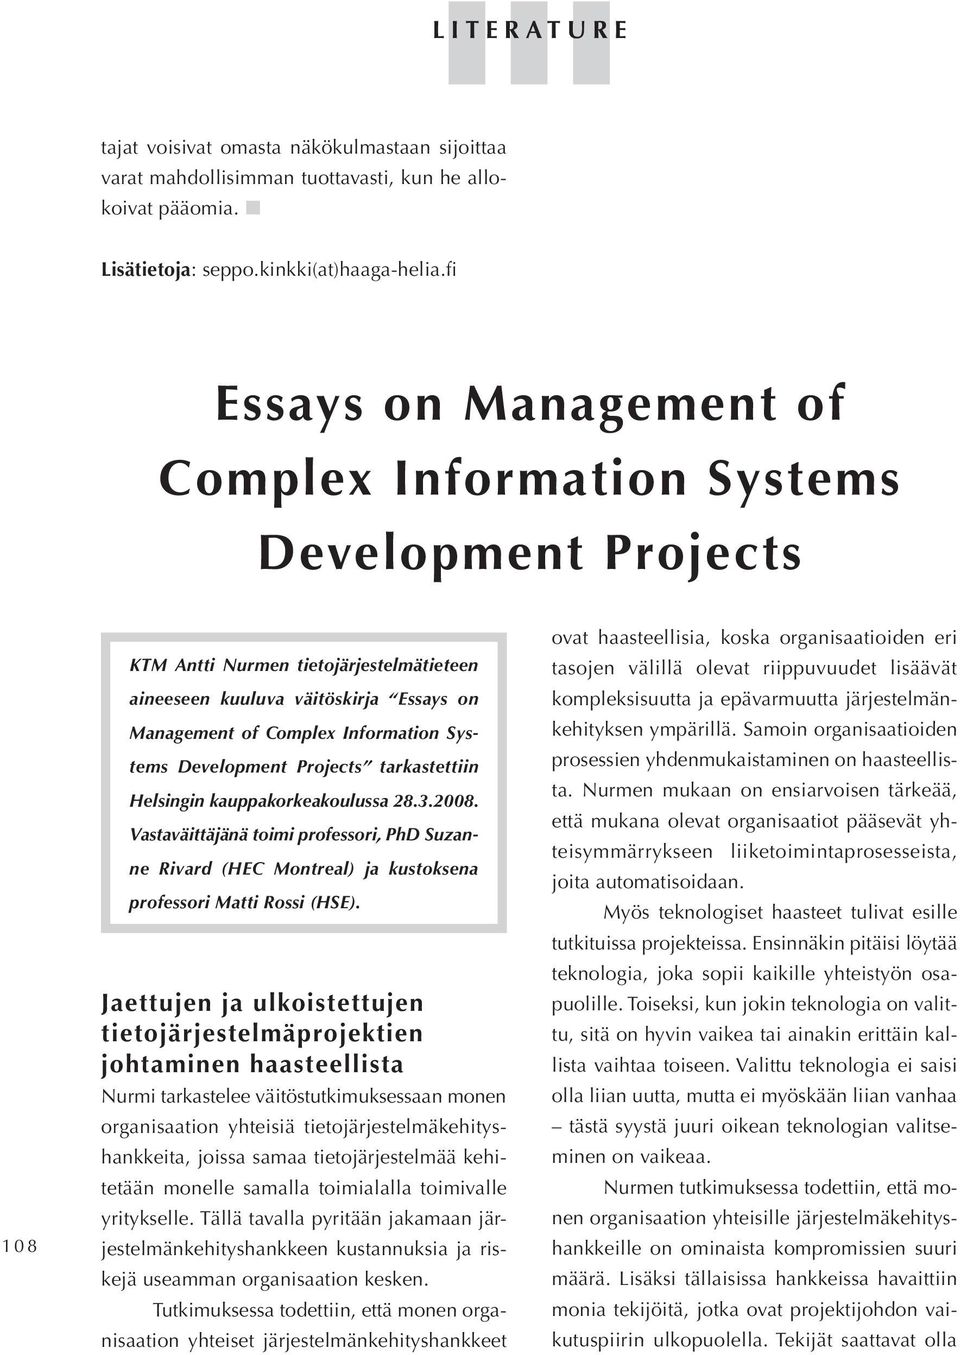 Systems Development Projects tarkastettiin Helsingin kauppakorkeakoulussa 28.3.2008. Vastaväittäjänä toimi professori, PhD Suzanne Rivard (HEC Montreal) ja kustoksena professori Matti Rossi (HSE).